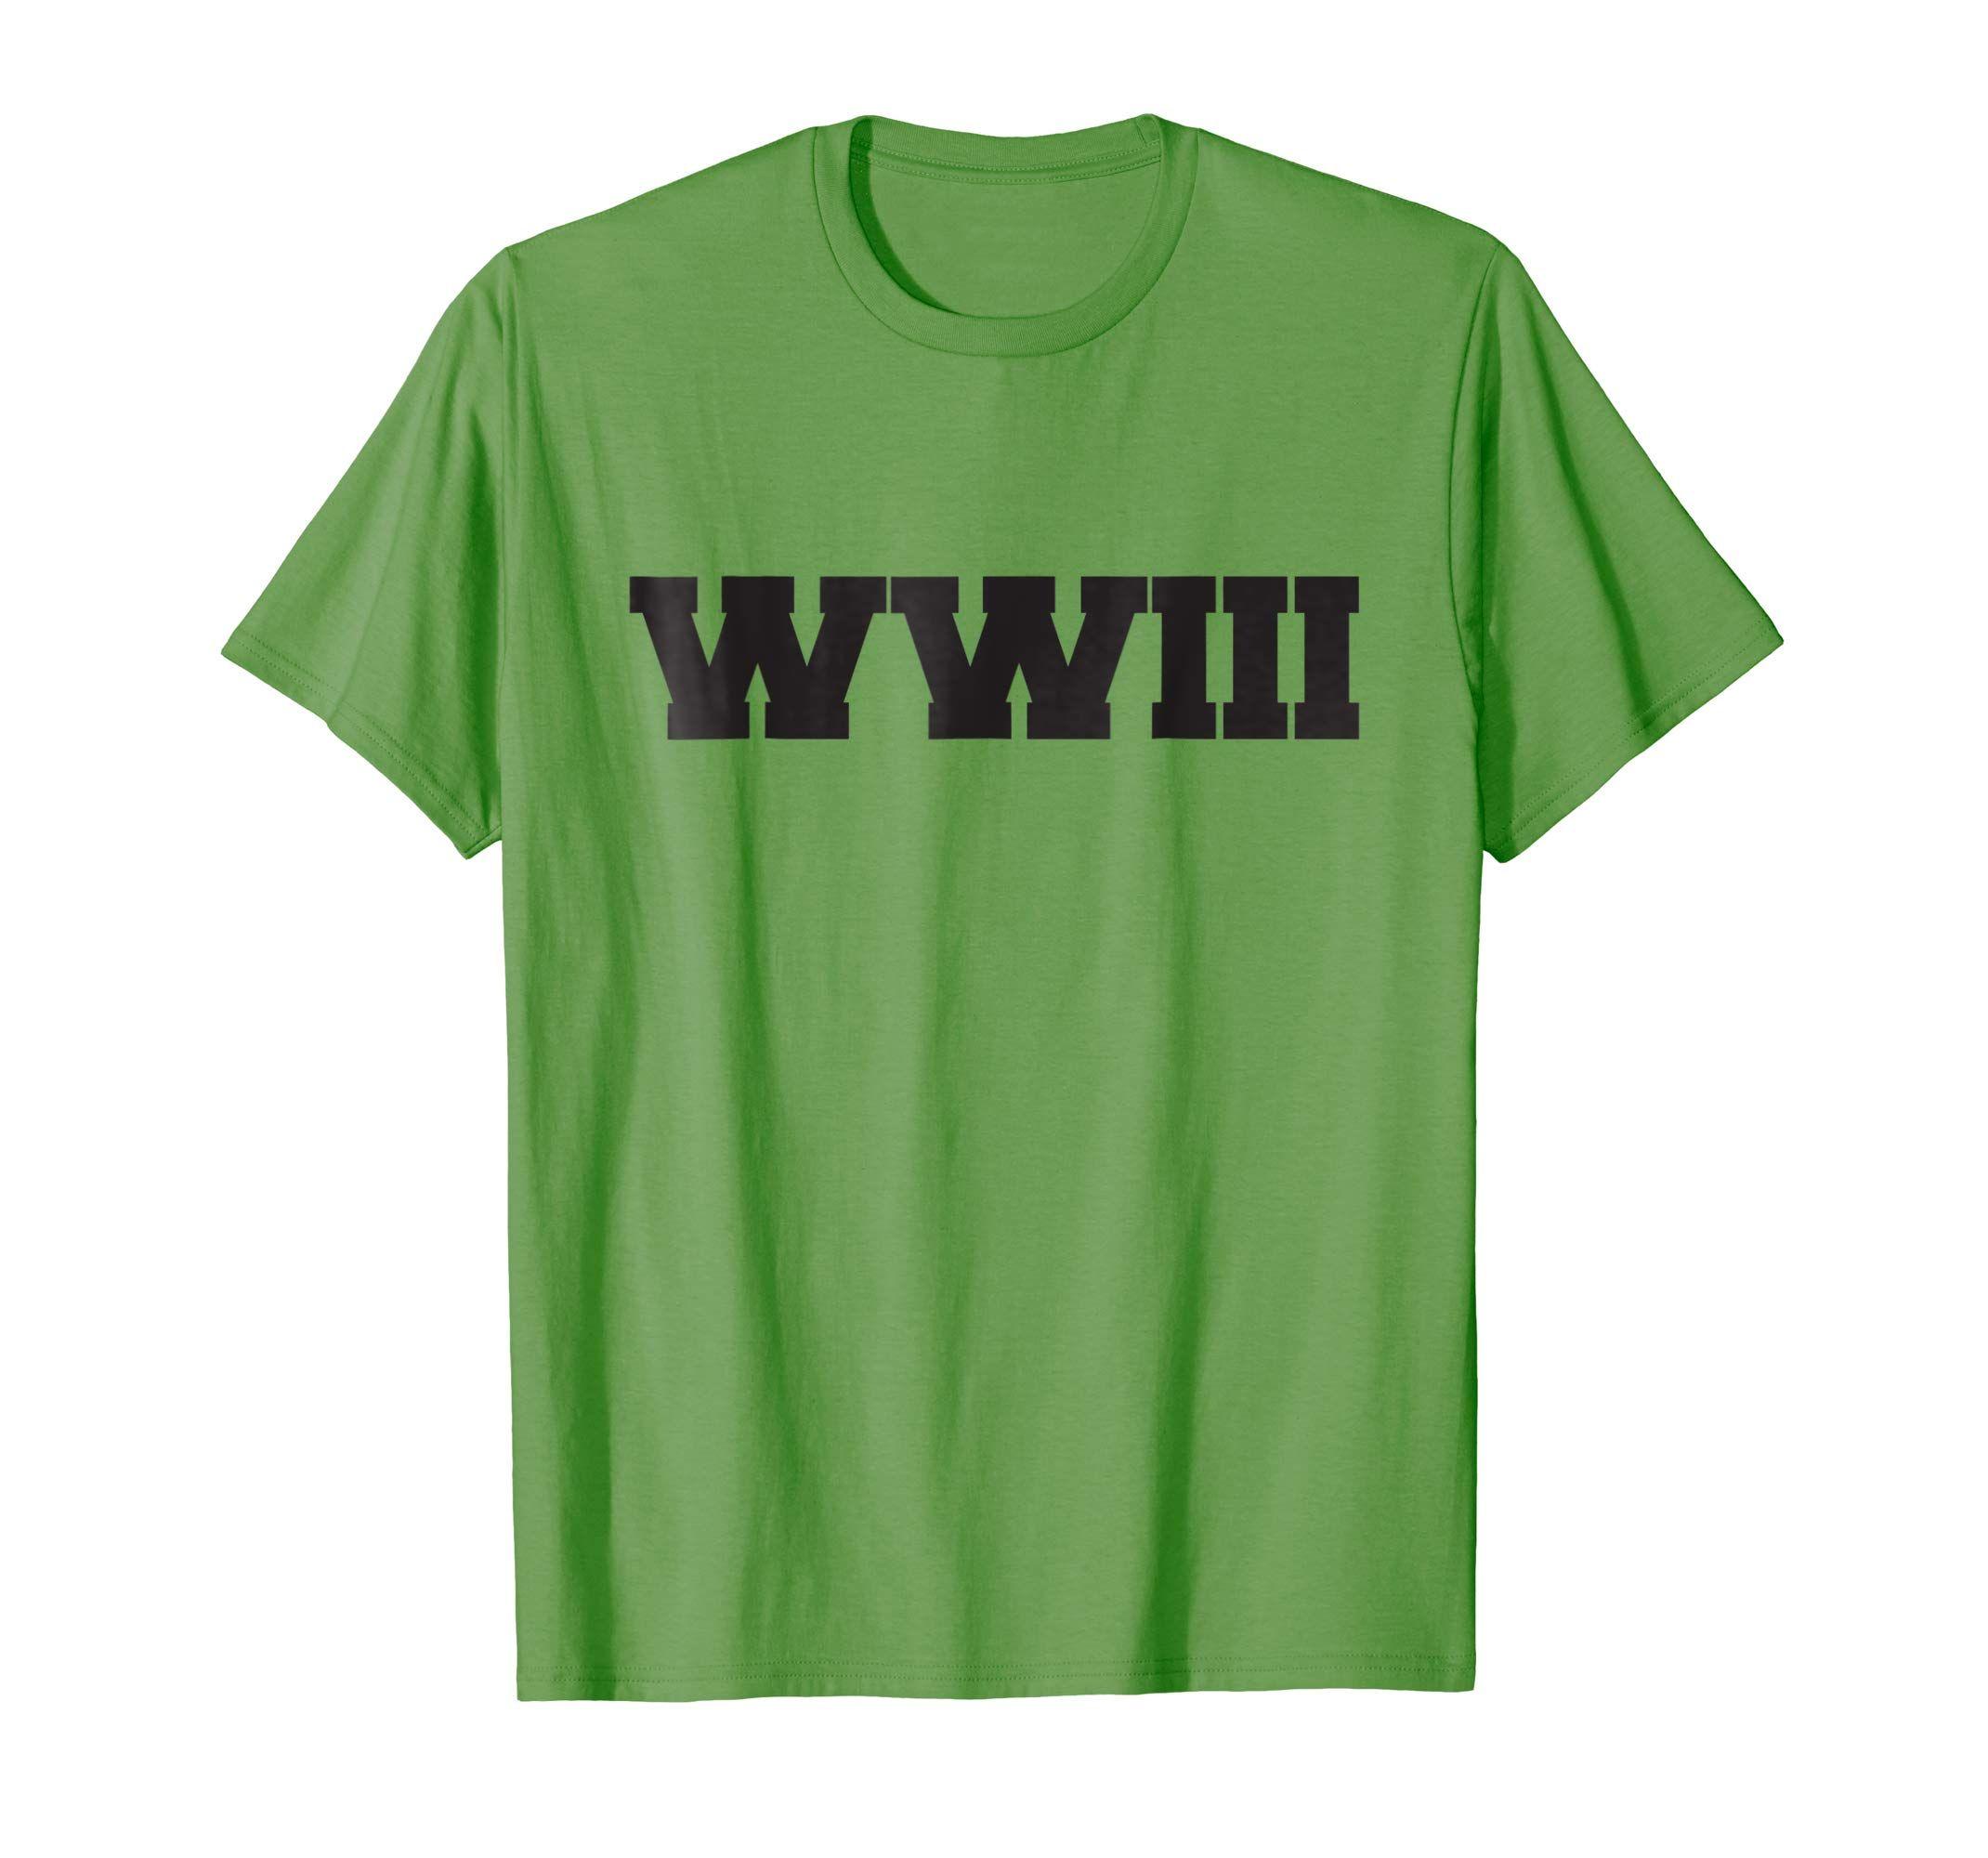 WWIII Logo - WWIII (World War 3) T Shirt: Clothing